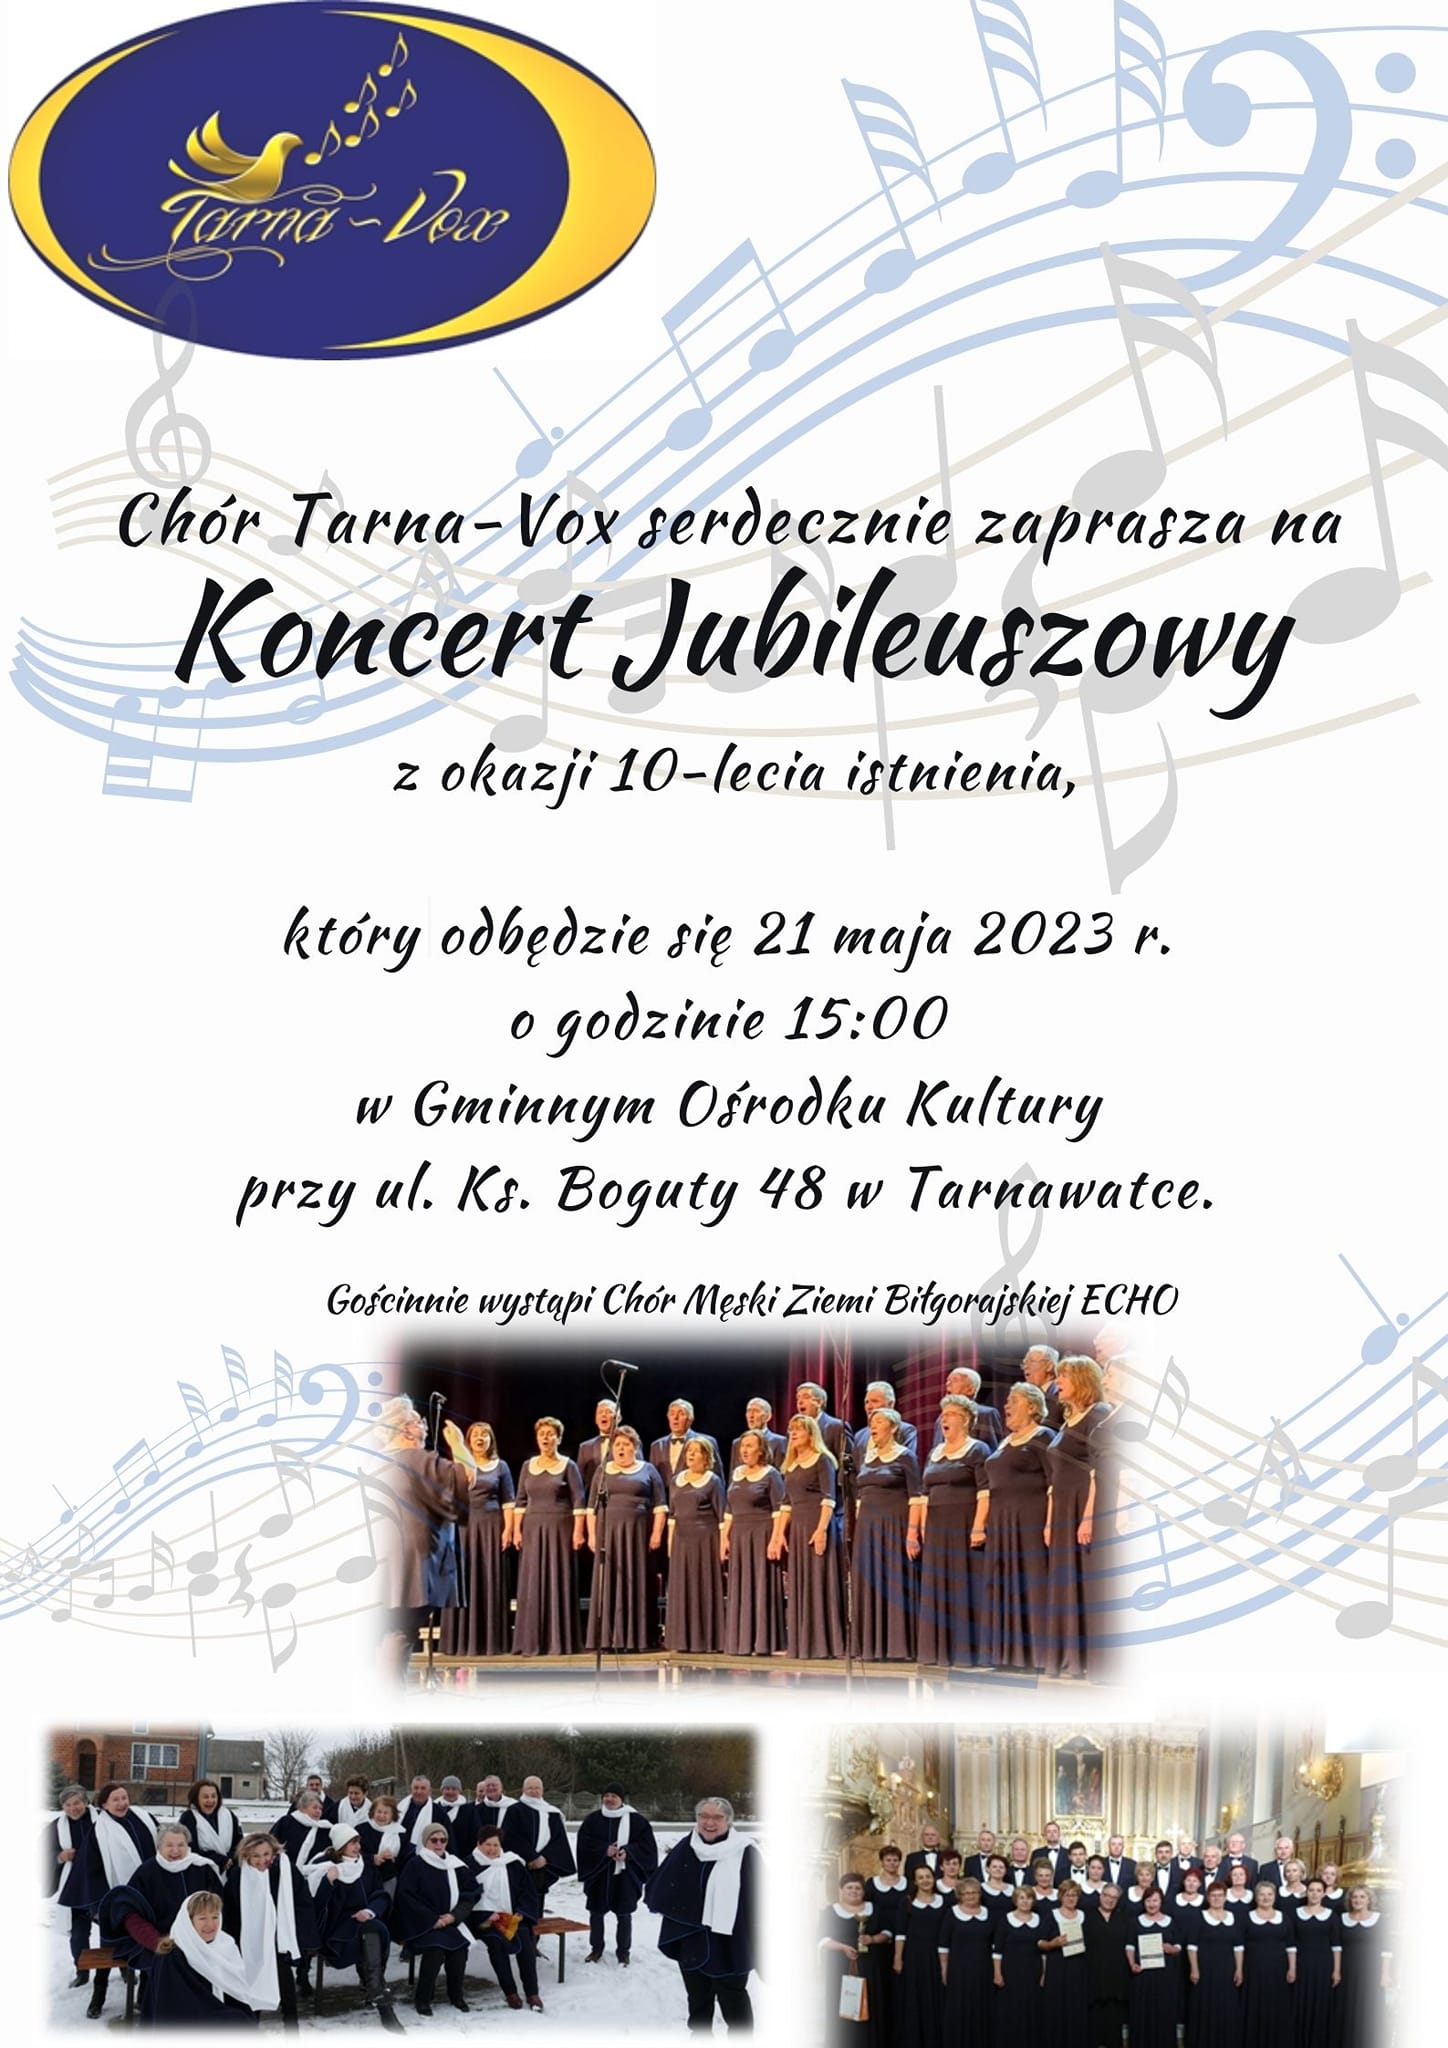 Koncert Jubileuszowy Chóru Tarna-Vox